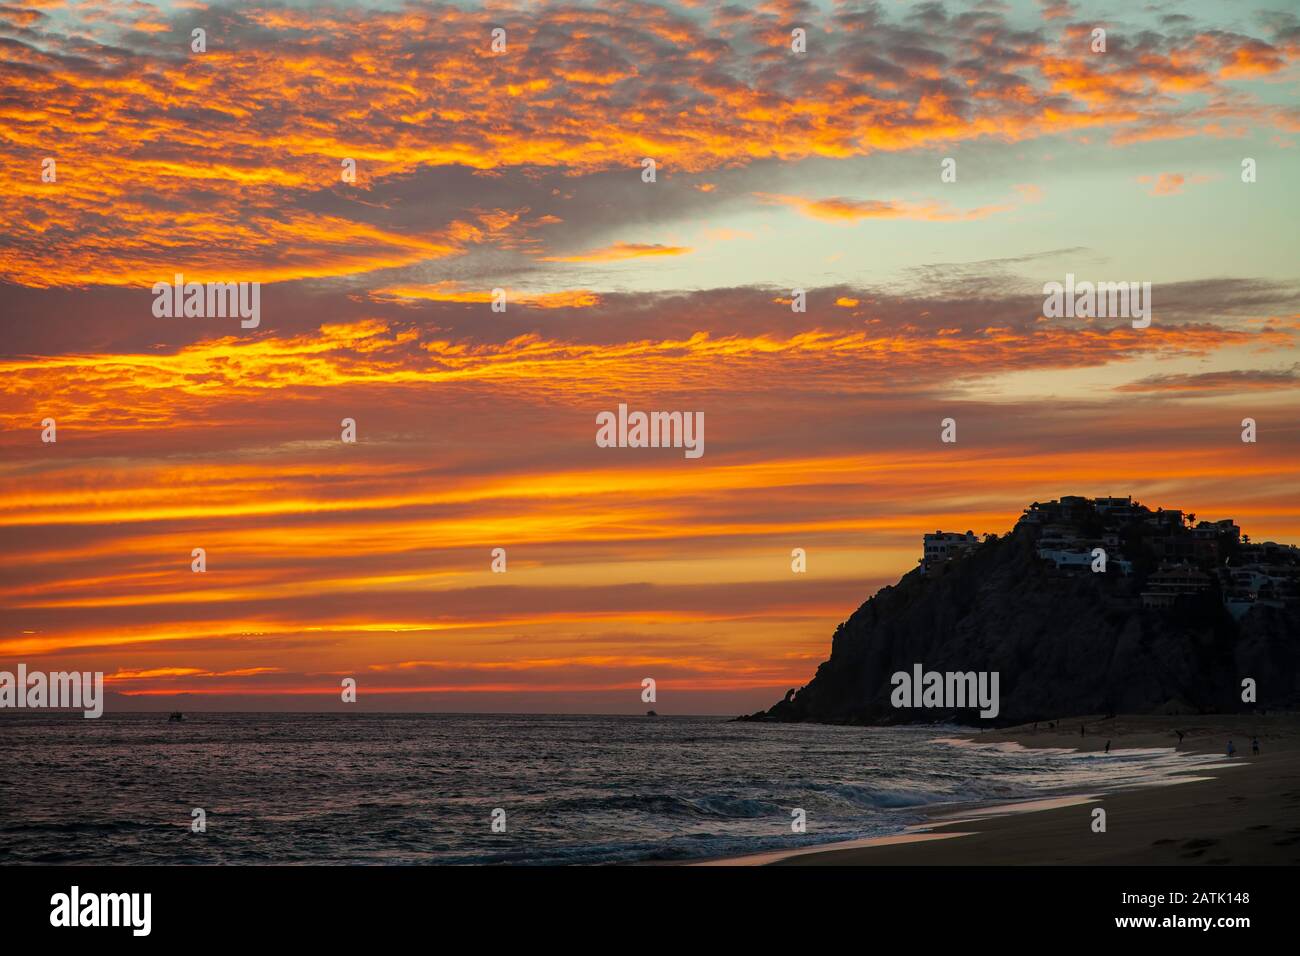 Nuages Orange, silhouette d'une falaise rocheuse et de la plage, plage de Solmar, Cabo San Lucas, Baja California Sur, Mexique Banque D'Images